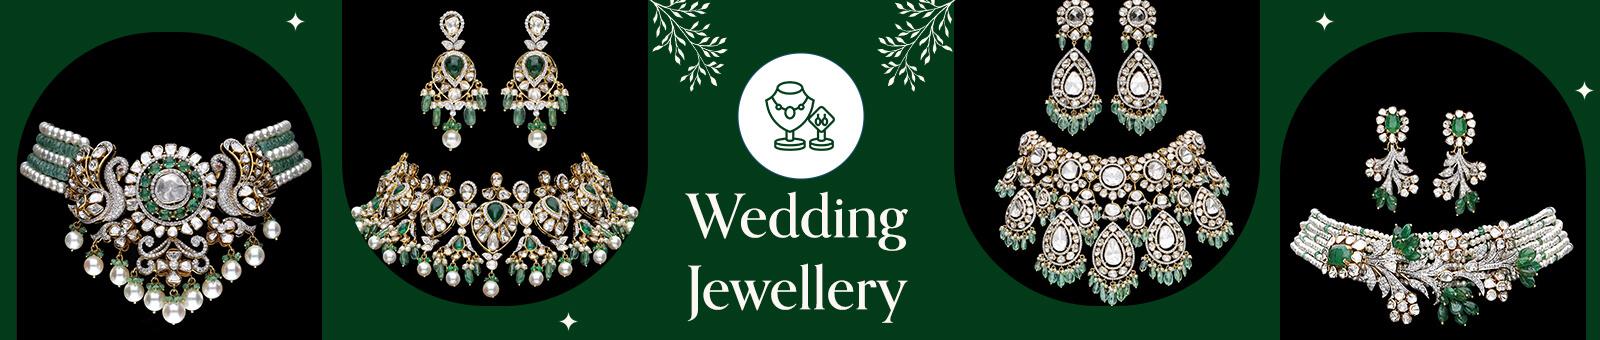 Top Bridal Jewelers in Delhi